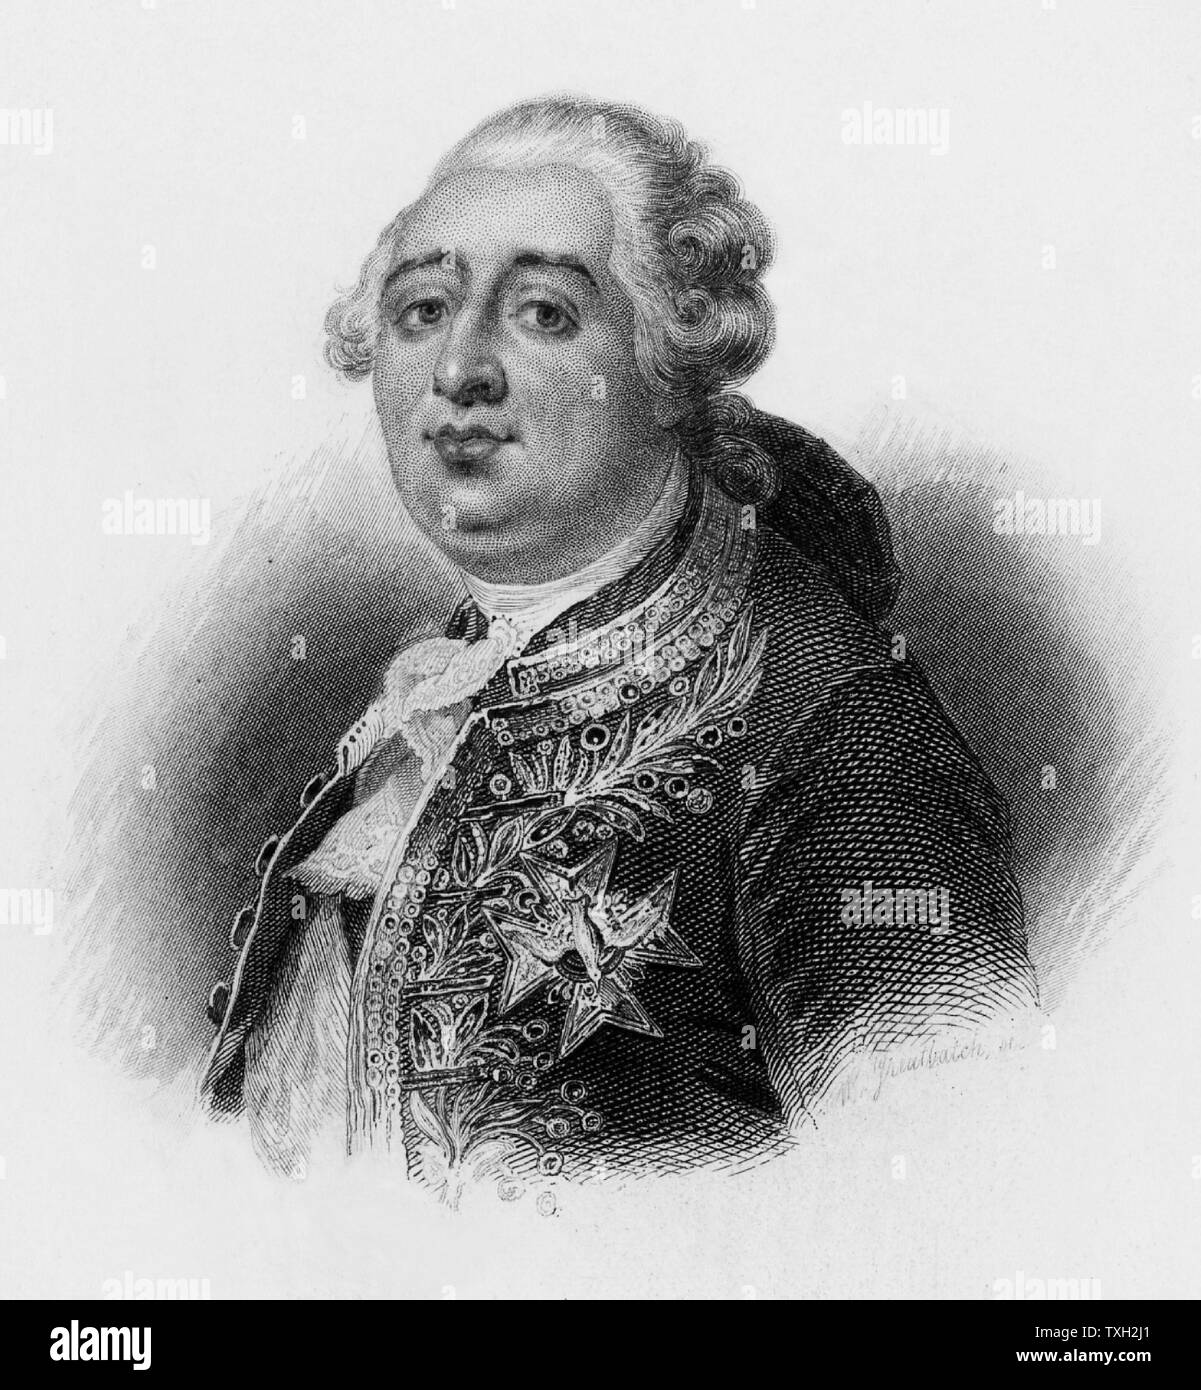 Louis XVI (1754-1793) Roi de France de 1774, traduit en justice par la Convention nationale révolutionnaire, décembre 1792. Guillotiné le 21 janvier 1793. Lithographie. Banque D'Images